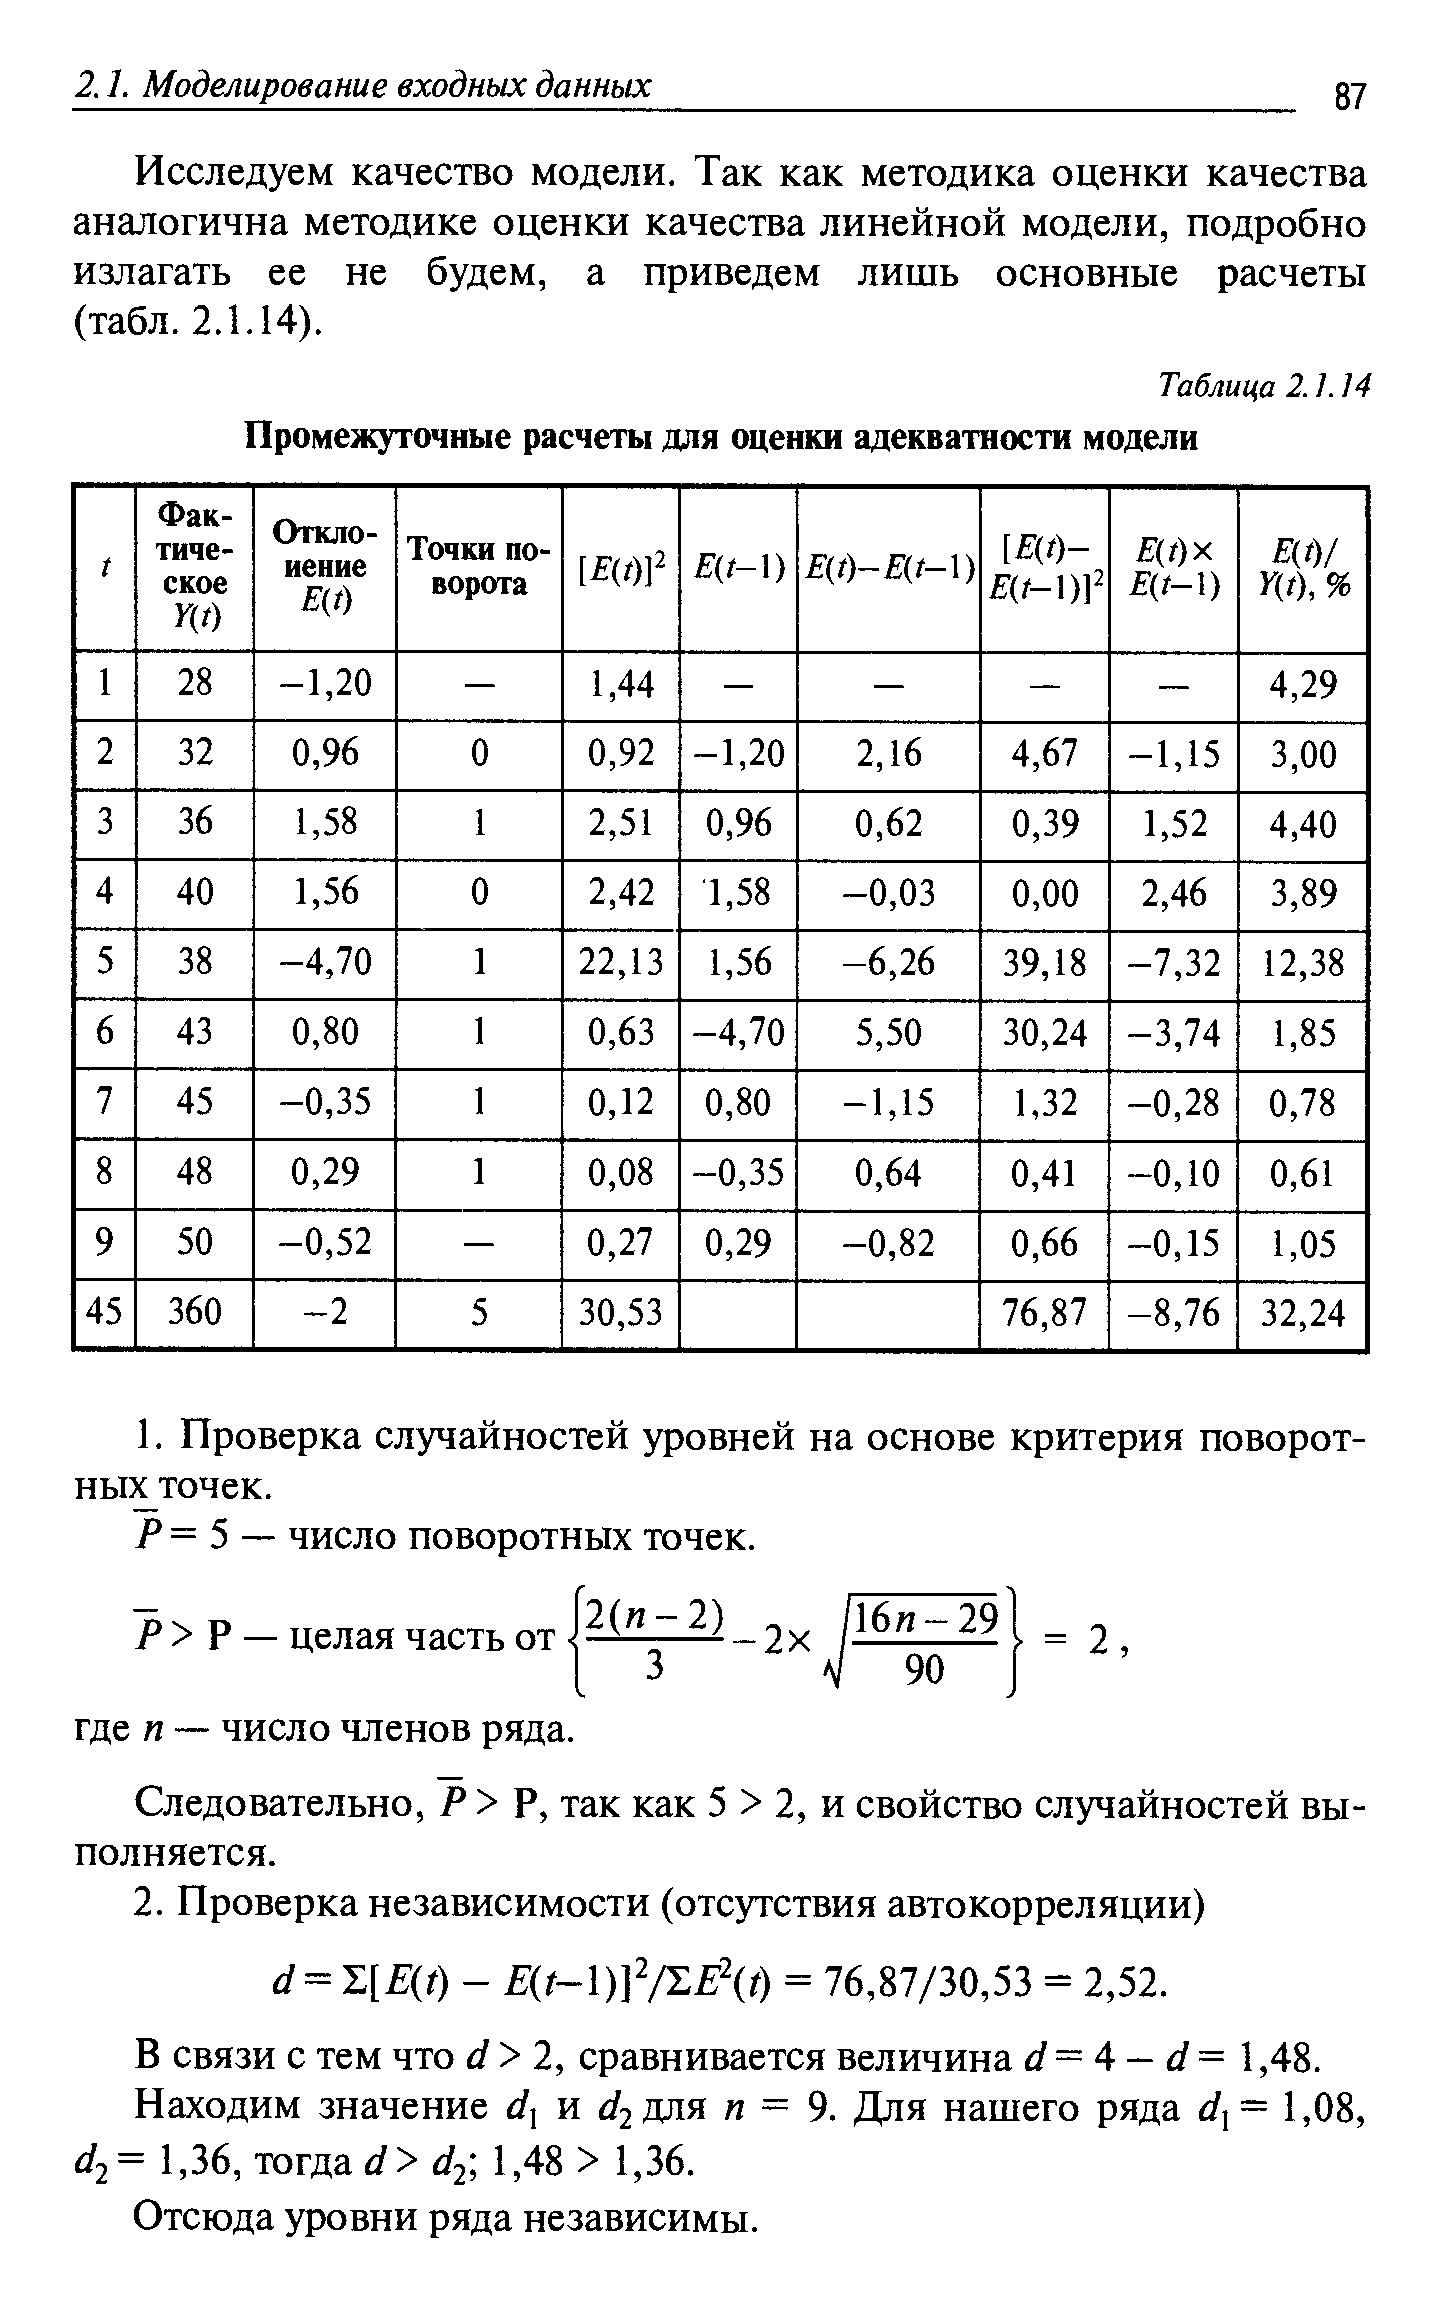 Таблица 2.1.14 Промежуточные расчеты для оценки адекватности модели
